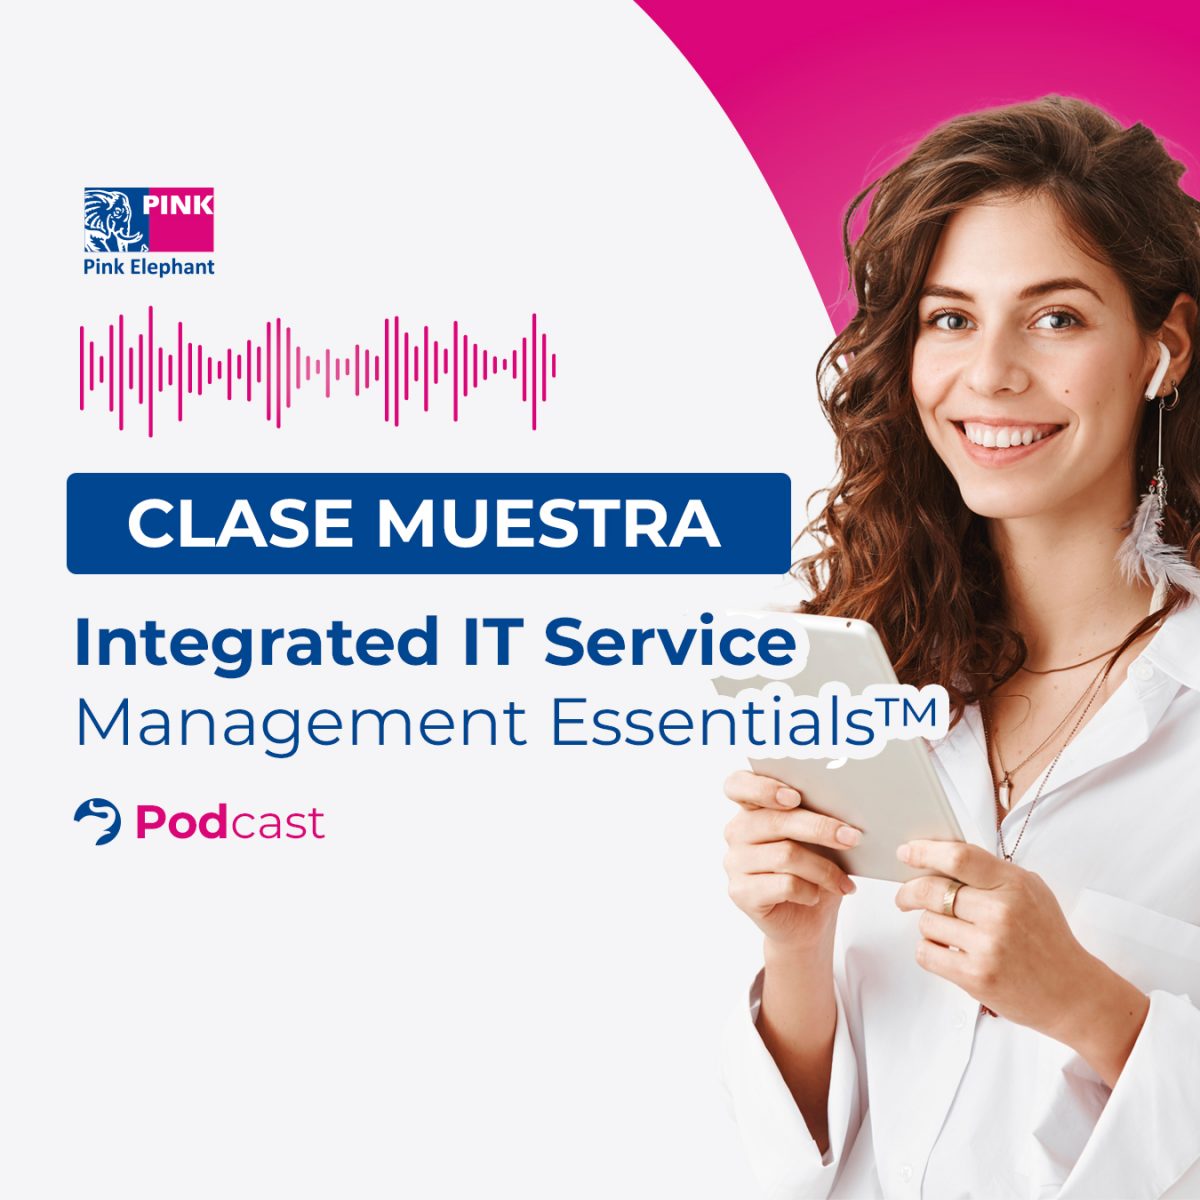 Video: Clase muestra, Conozca nuestro nuevo curso «Integrated IT Service Management Essentials™»